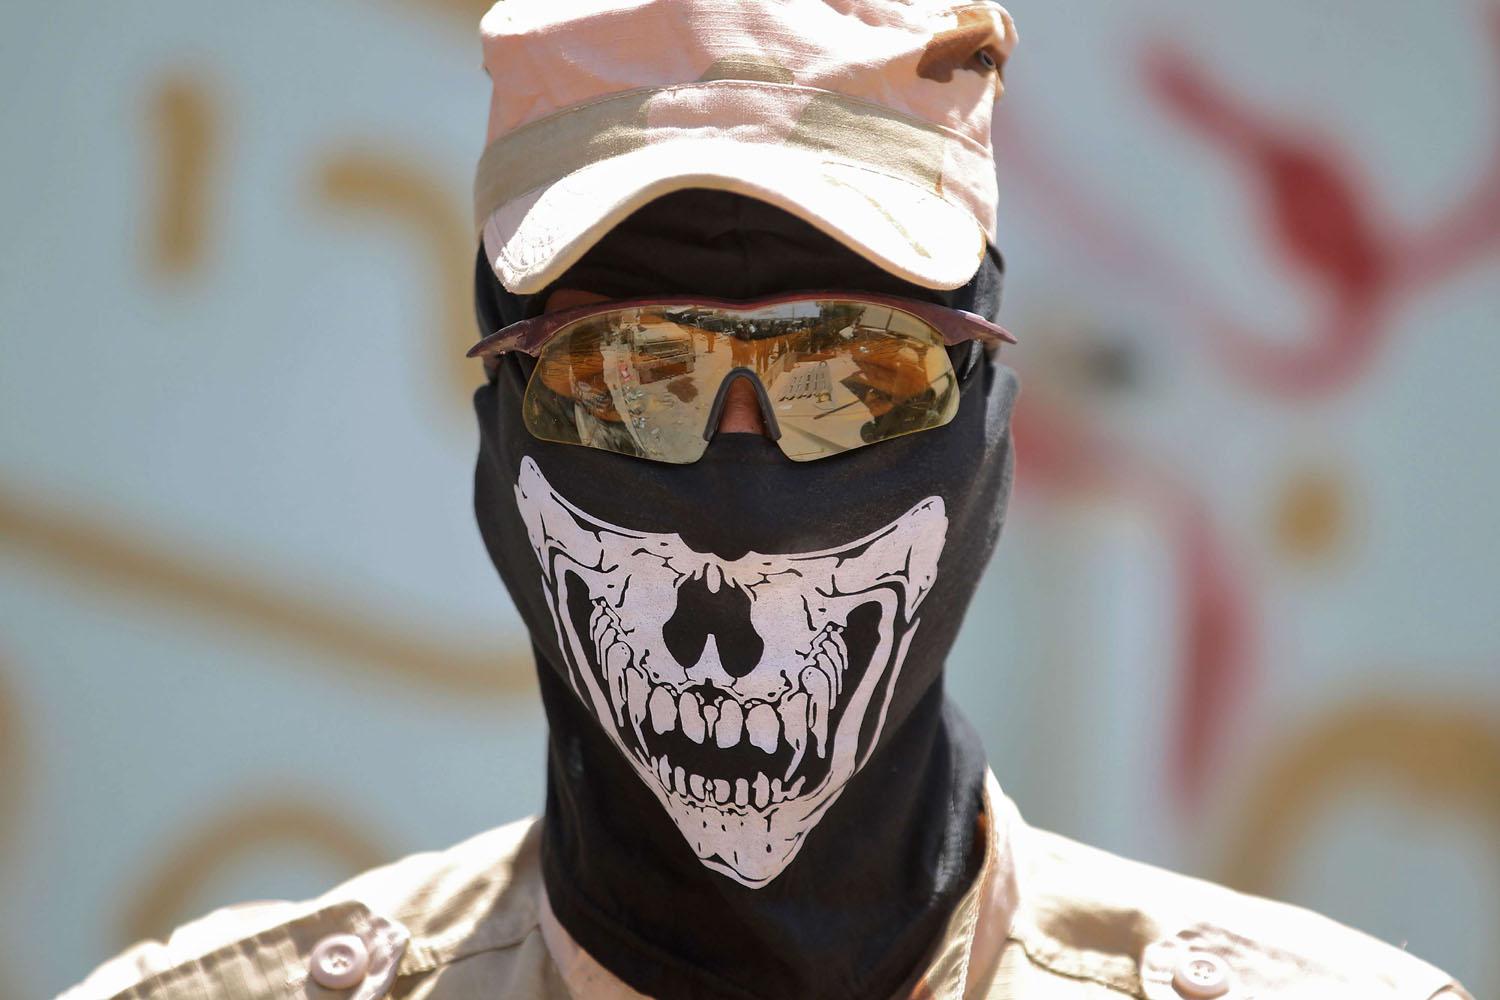  أحد أفراد قوى الأمن العراقية